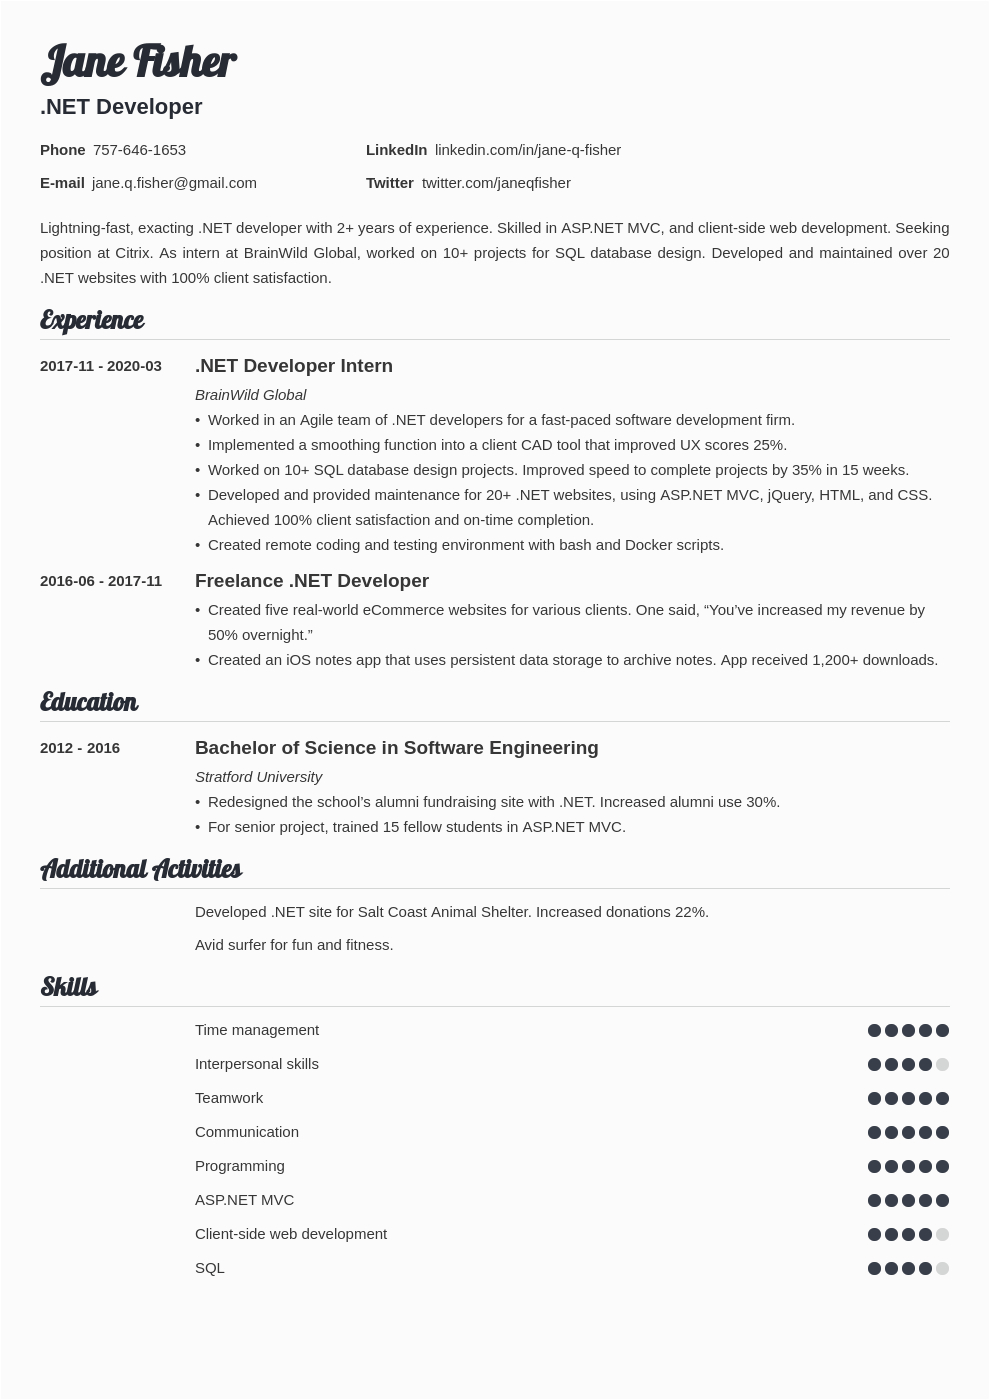 Sample Resume for Dot Net Developer Experience 5 Years Net Developer Resume Samples [experienced & Entry Level]